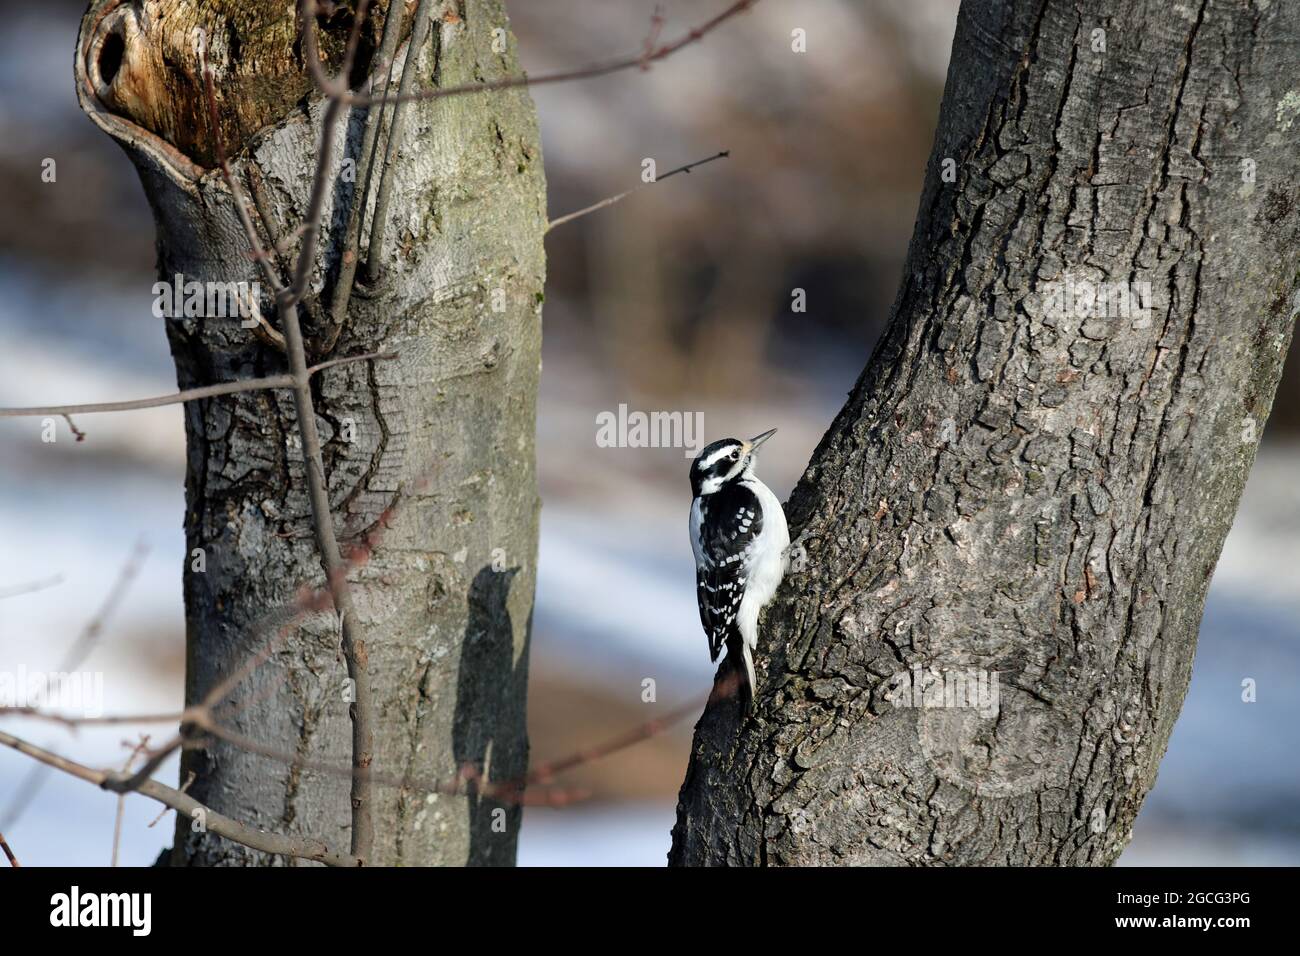 Ein weiblicher Flaumspecht (Picoides pubescens), der sich im Winter an die Rinde eines Ahornbaums festhält Stockfoto